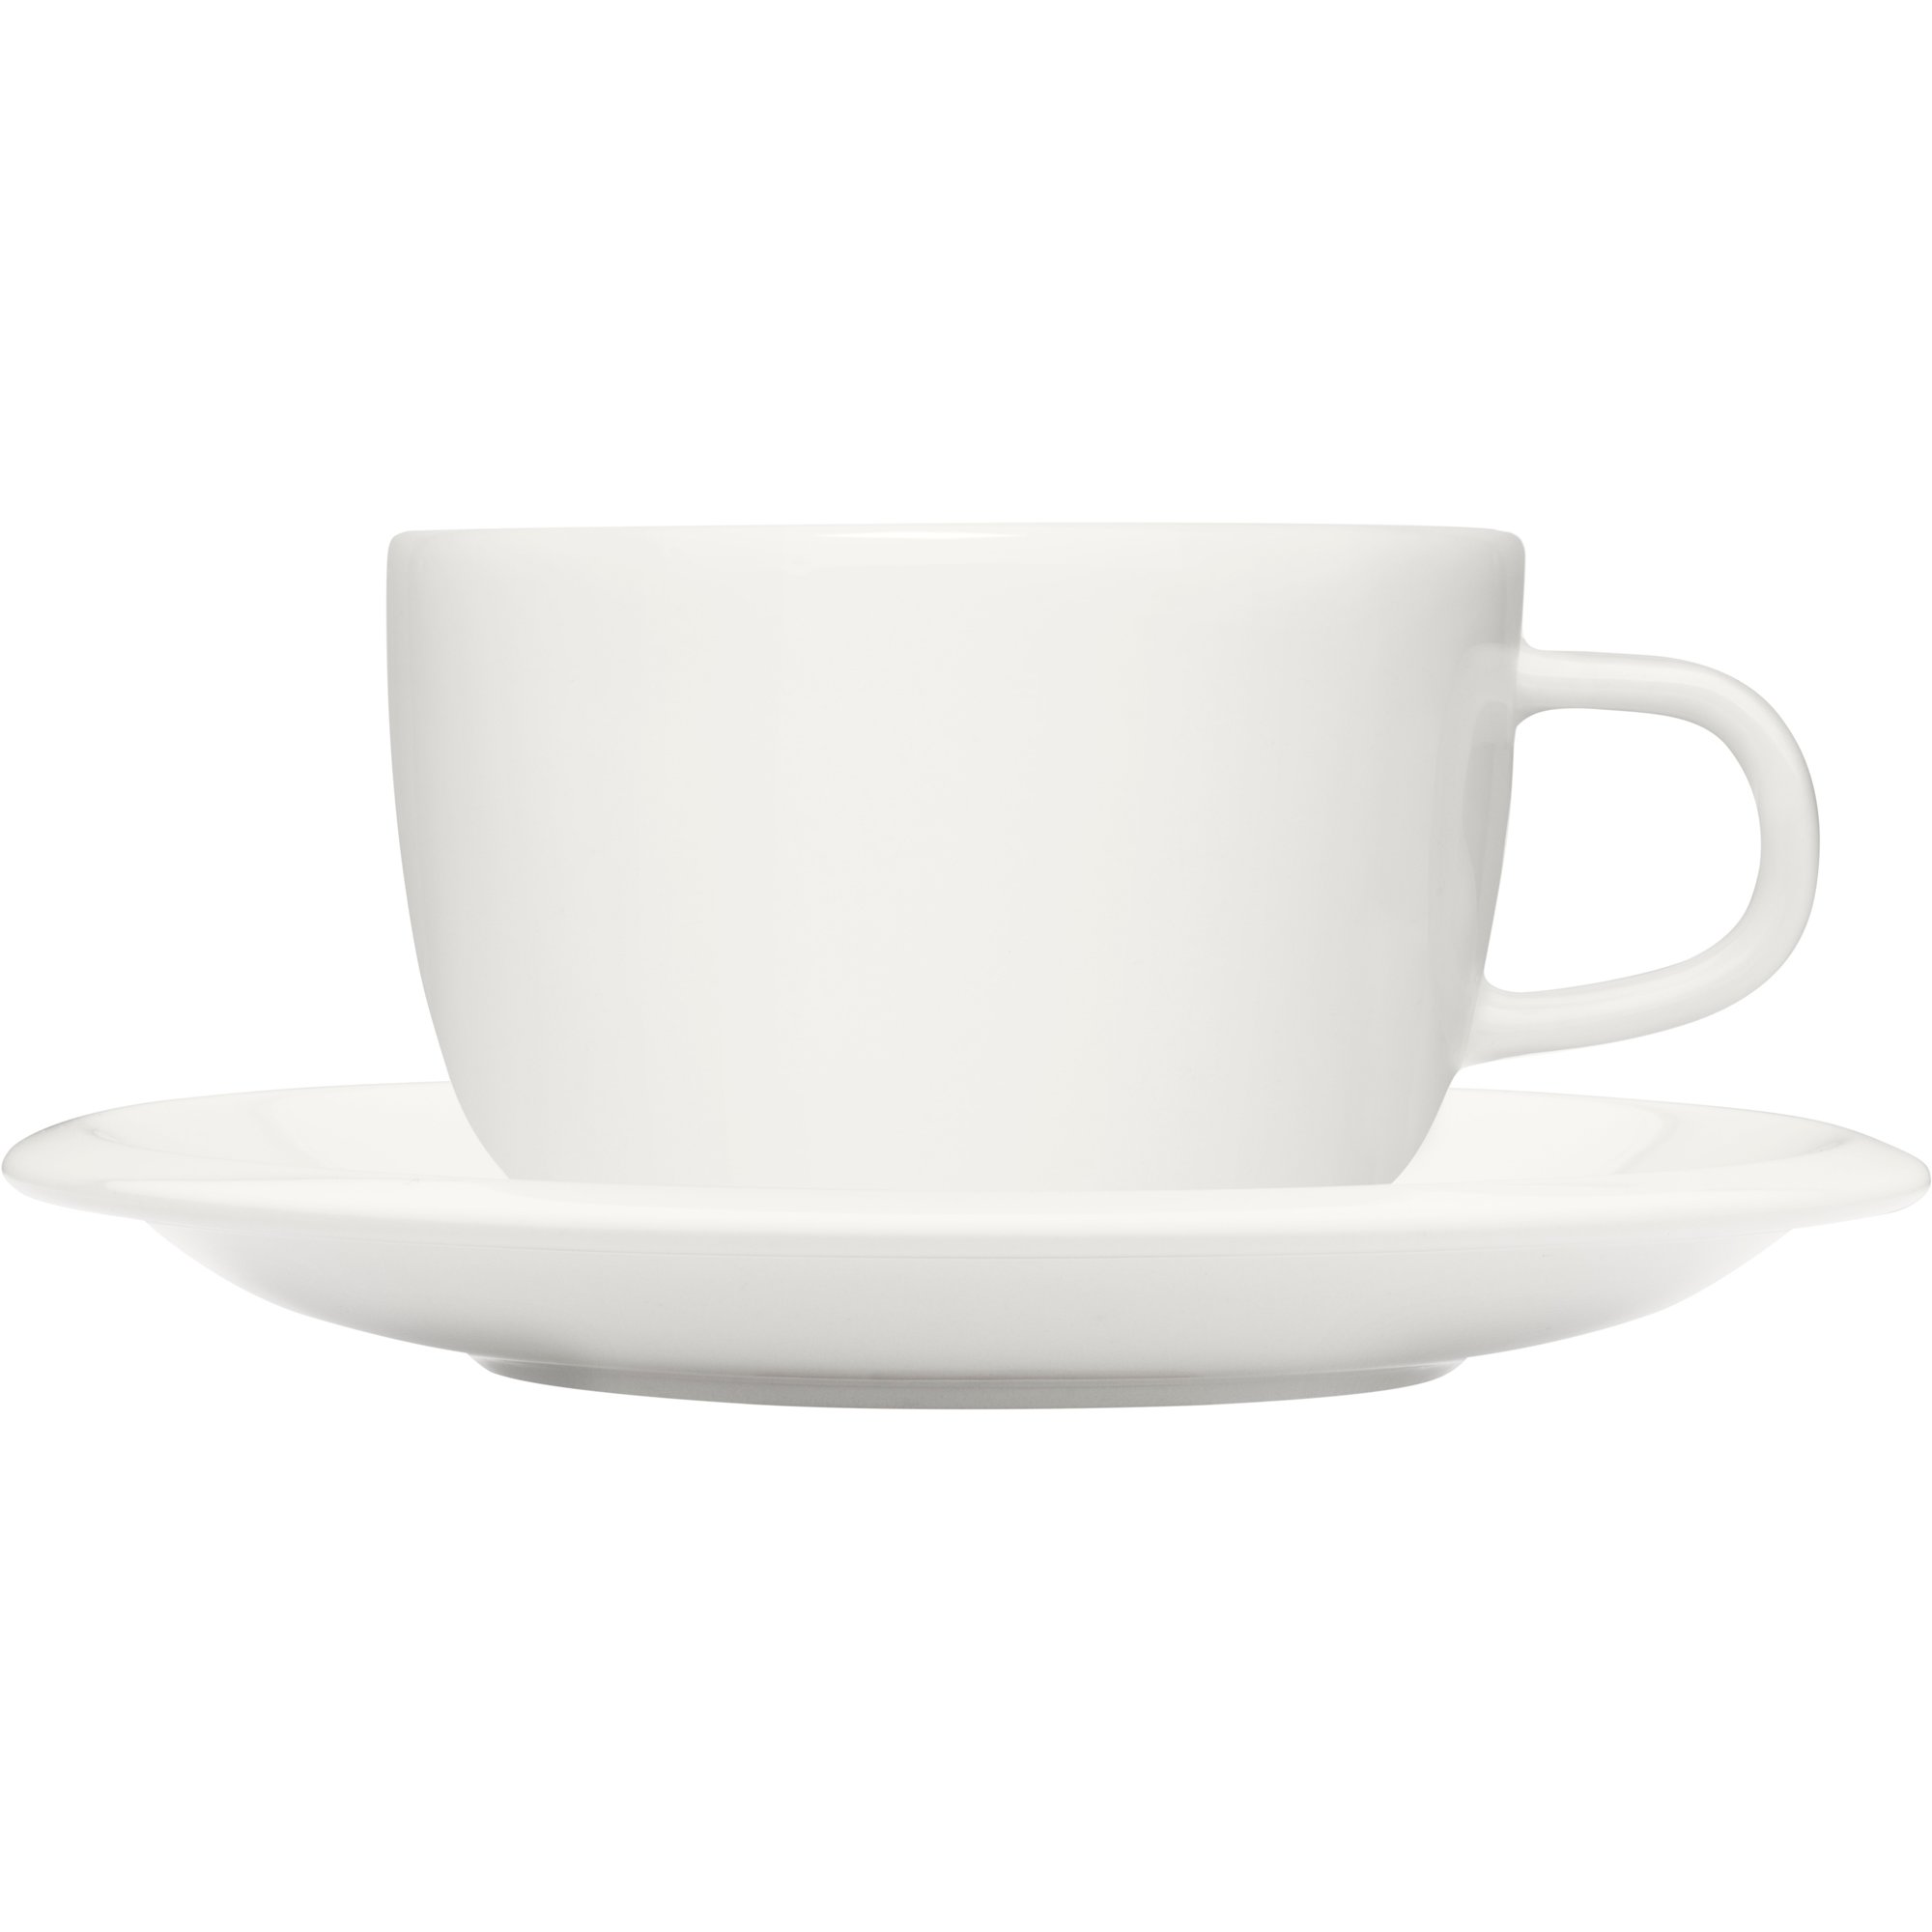 10: Iittala Raami kaffekop med fad, hvid